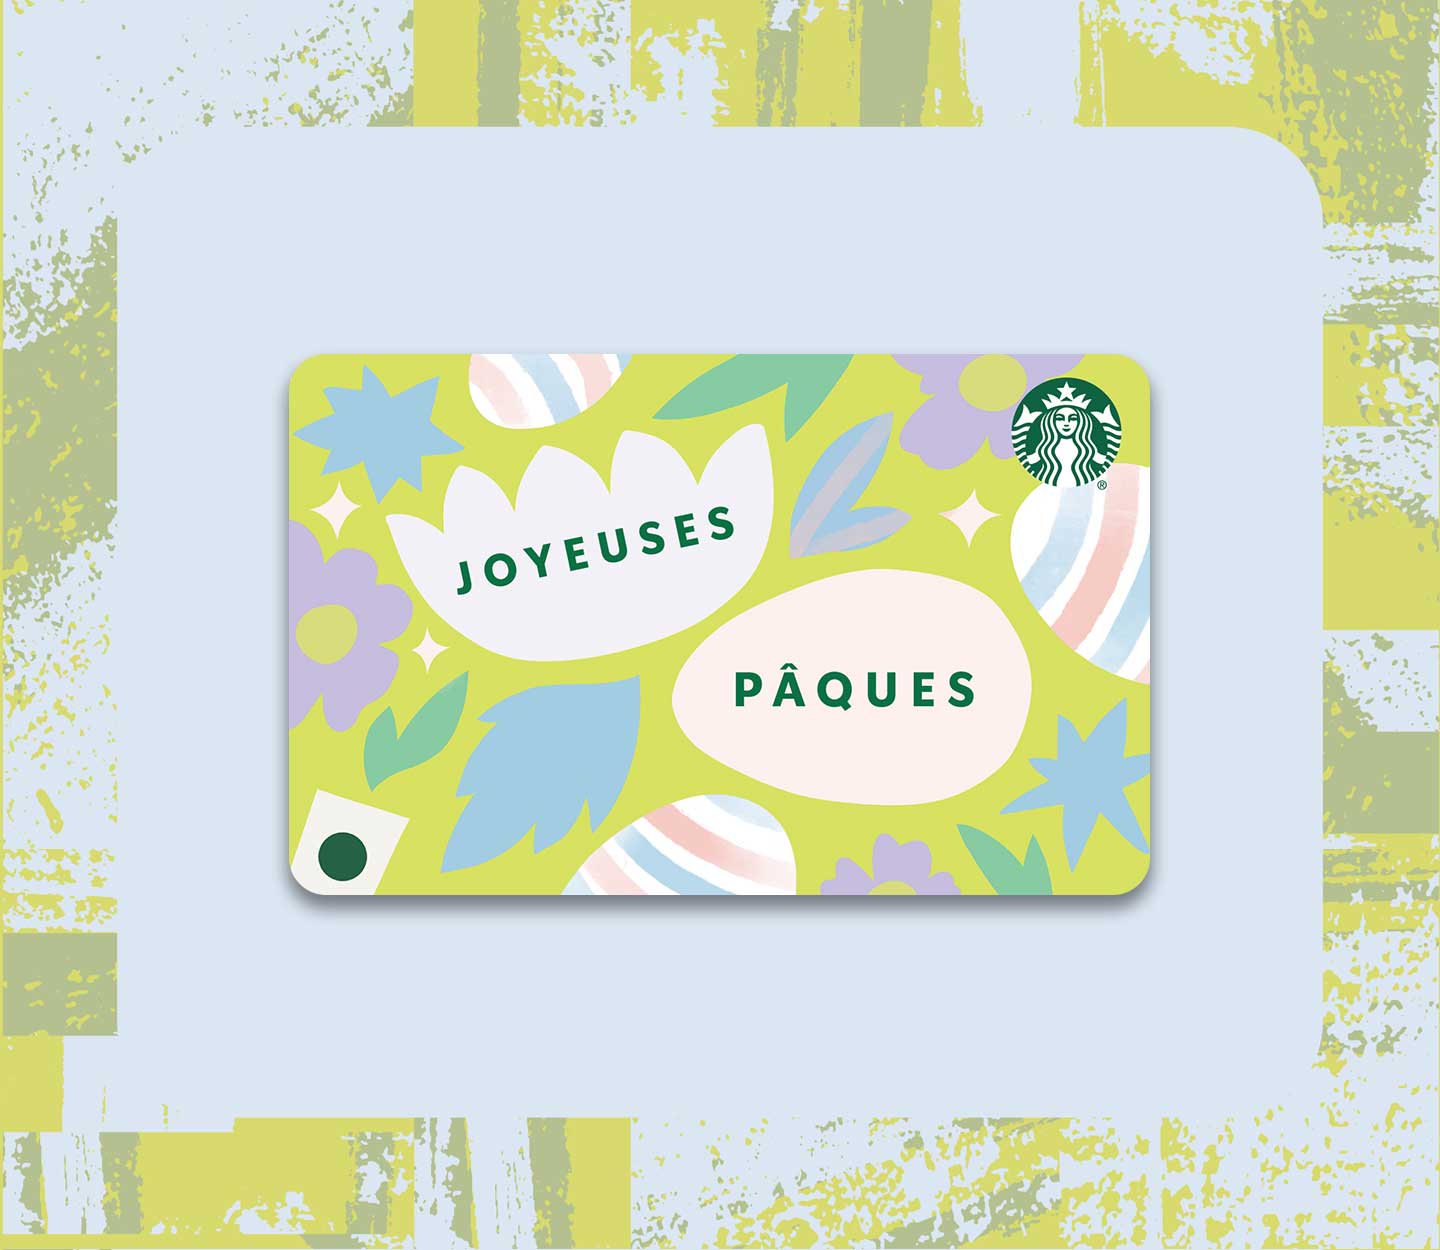 Une carte-cadeau portant l’inscription « JOYEUSES PÂQUES » avec une illustration d’œufs aux couleurs pastel.